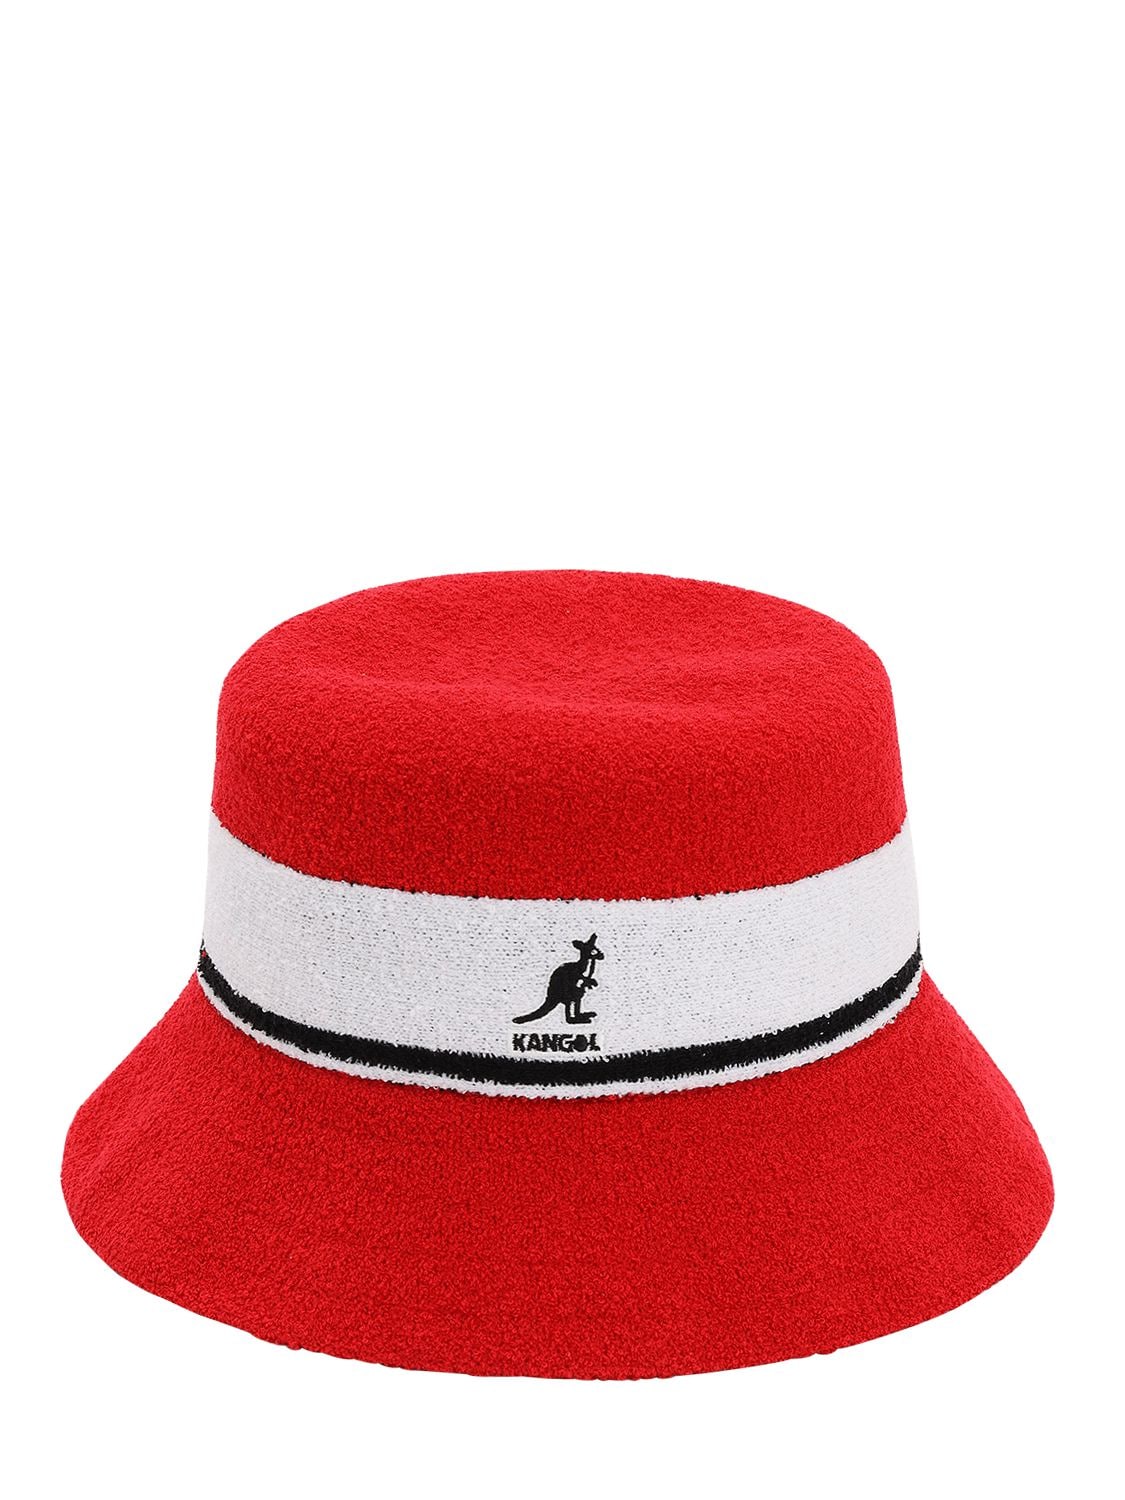 Kangol Bermuda Stripe Bucket Hat In Red